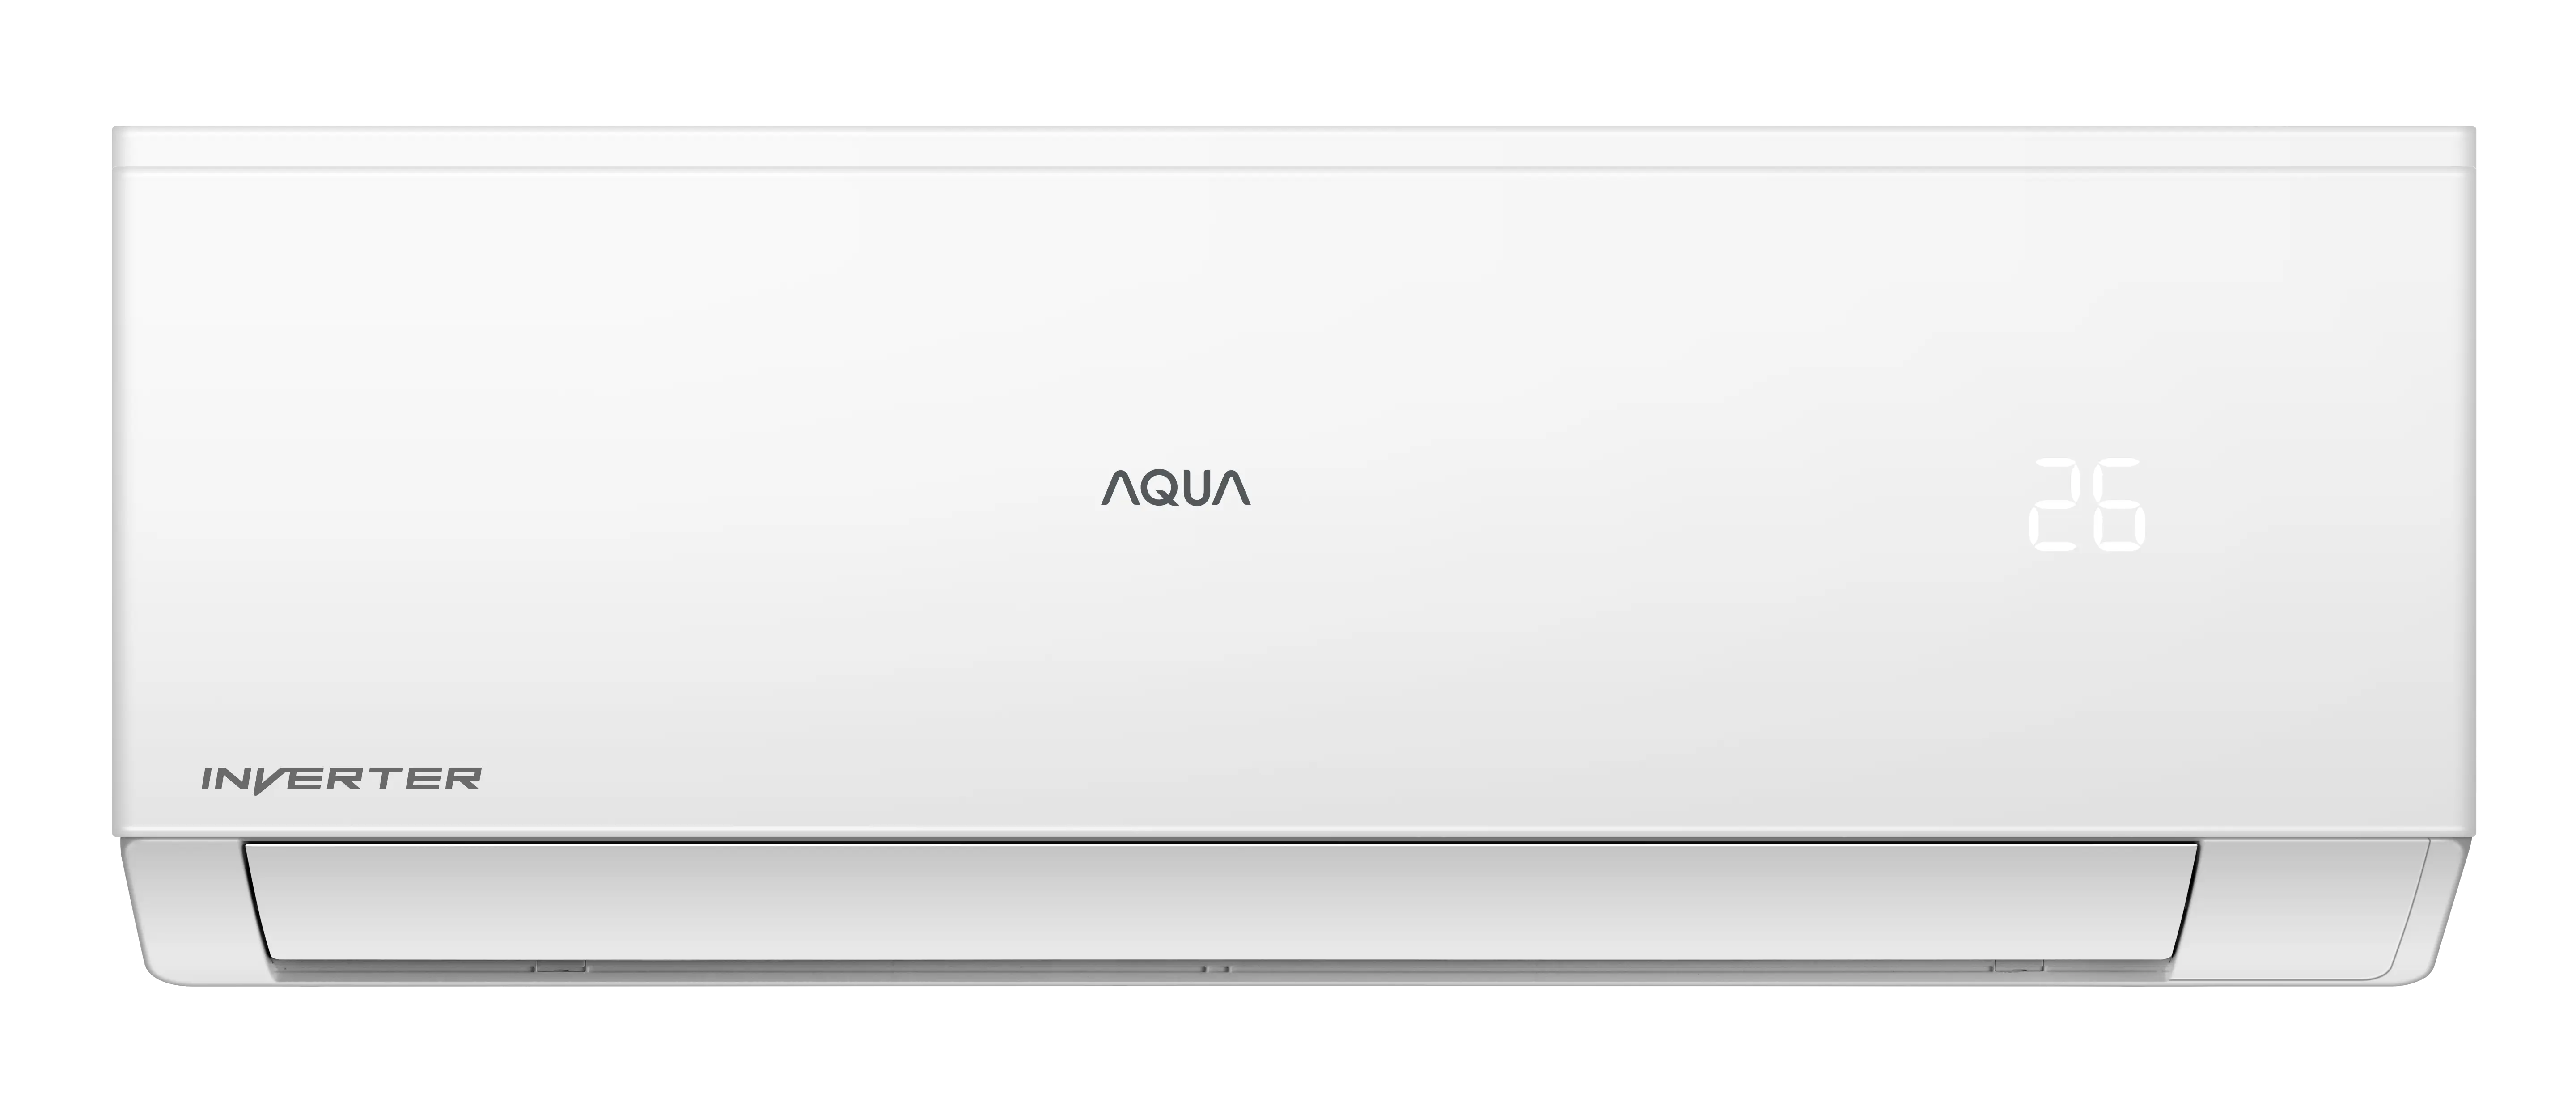 Máy Lạnh Aqua AQA-RV24QA2 Inverter 2.5HP - Hàng Chính Hãng (Chỉ giao HCM)